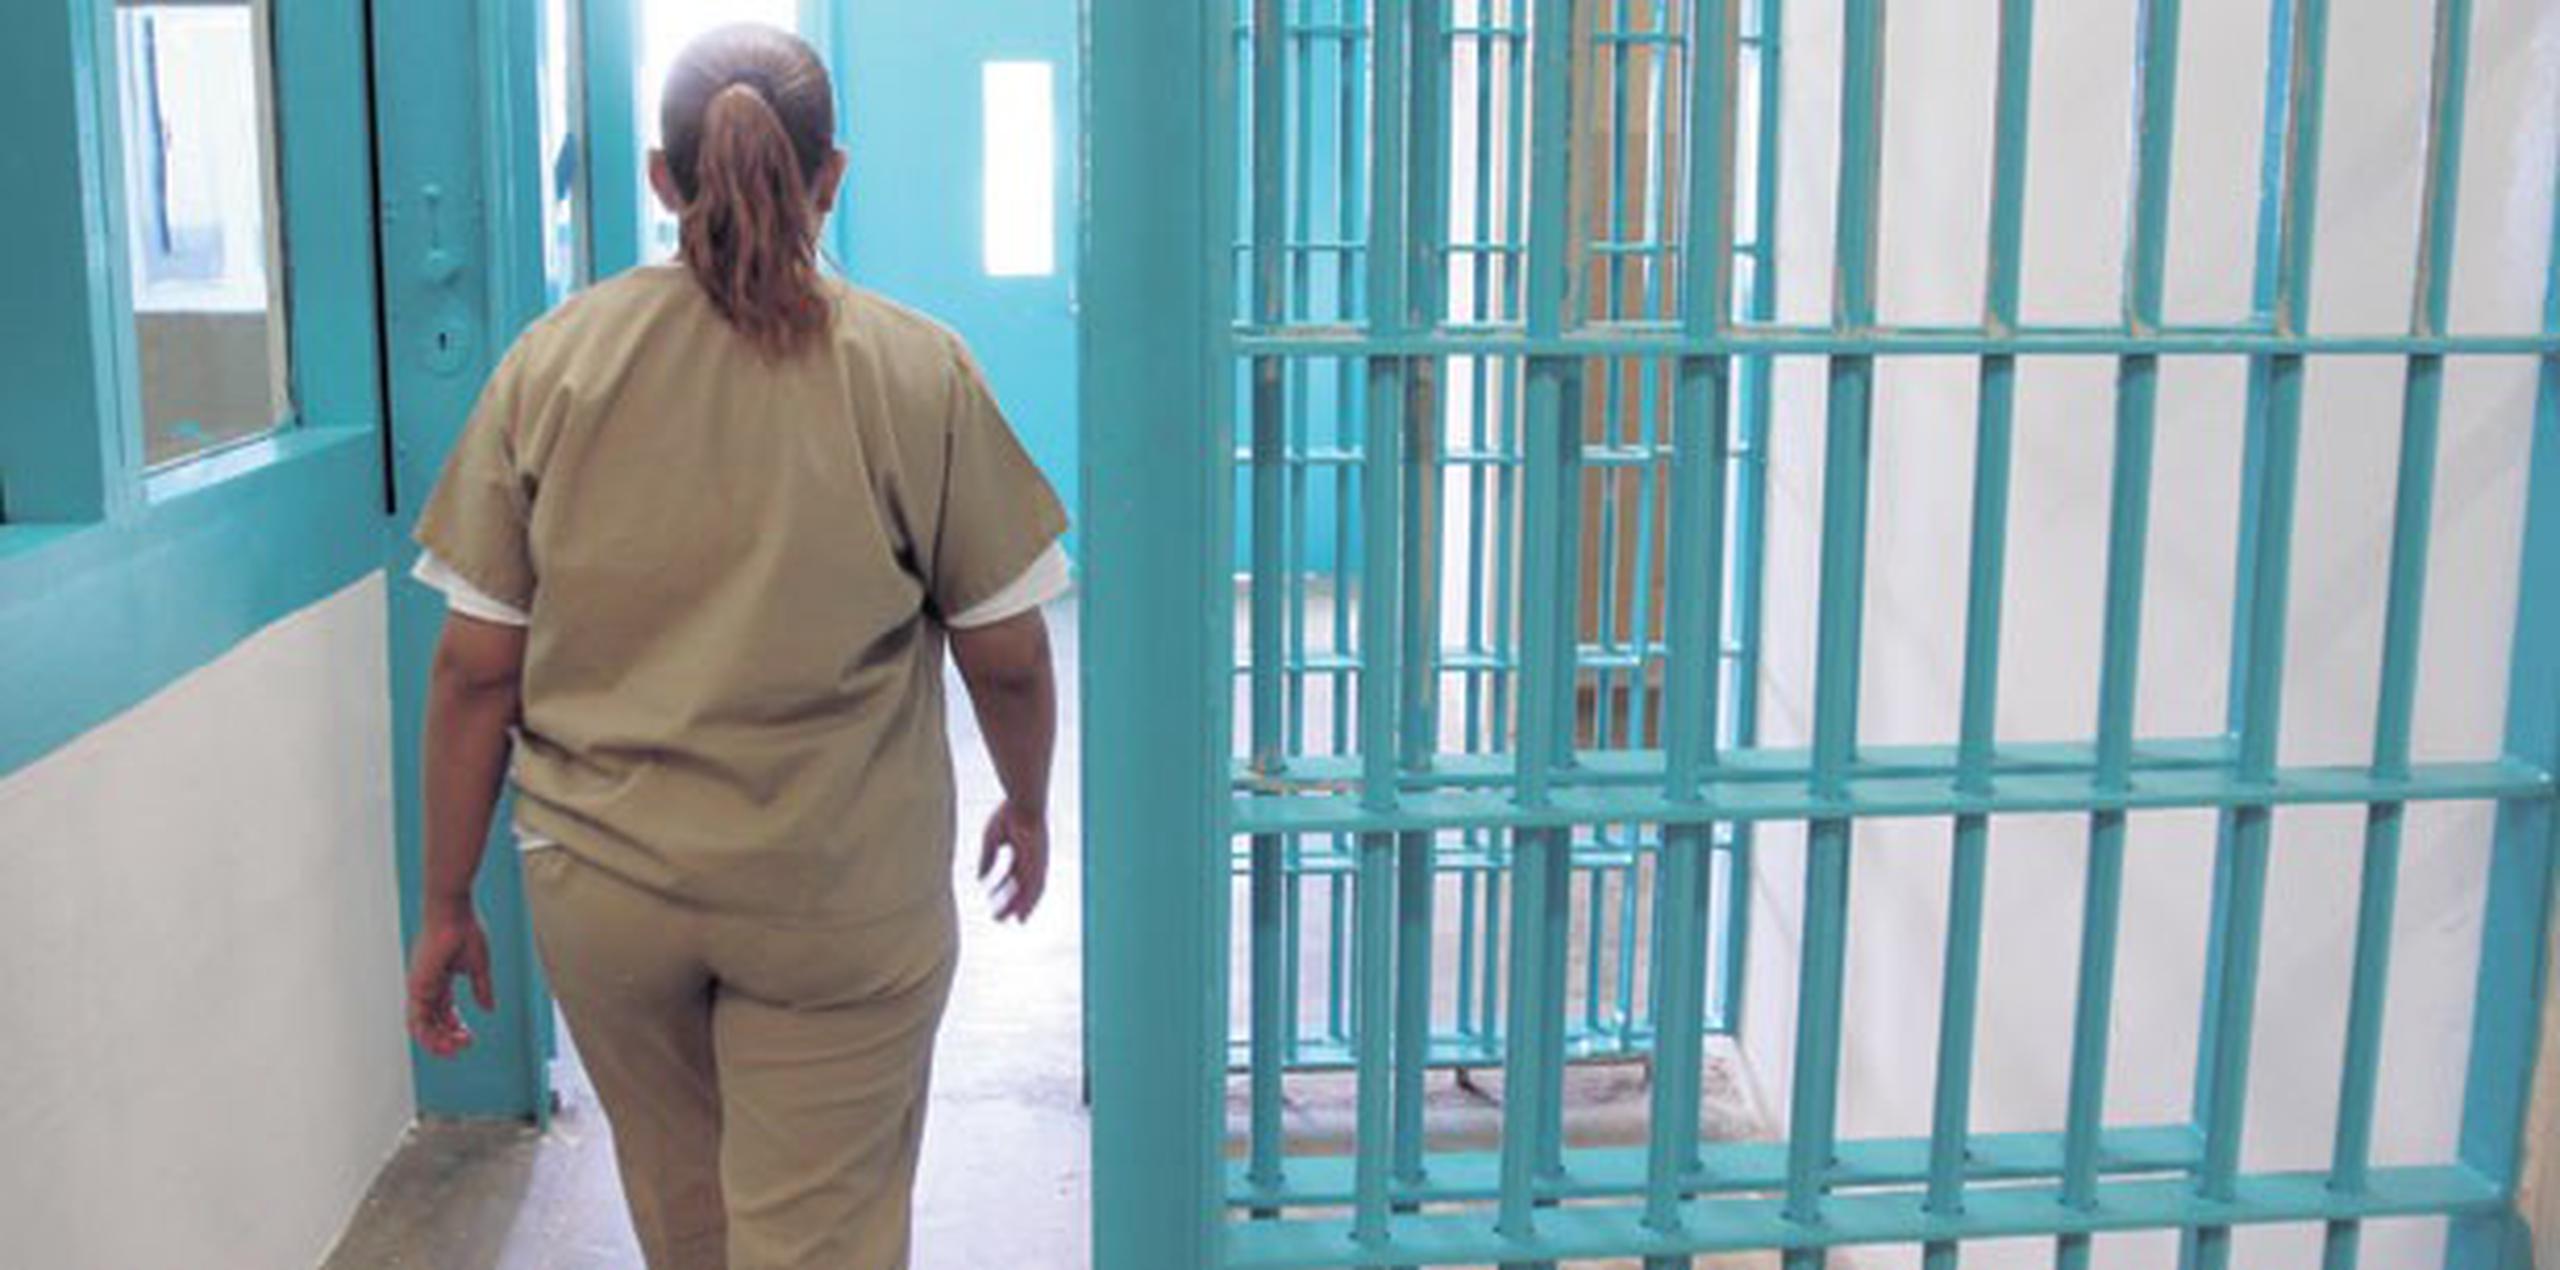 Fue ingresada ayer en la cárcel de mujeres de Vega Alta. (Archivo)